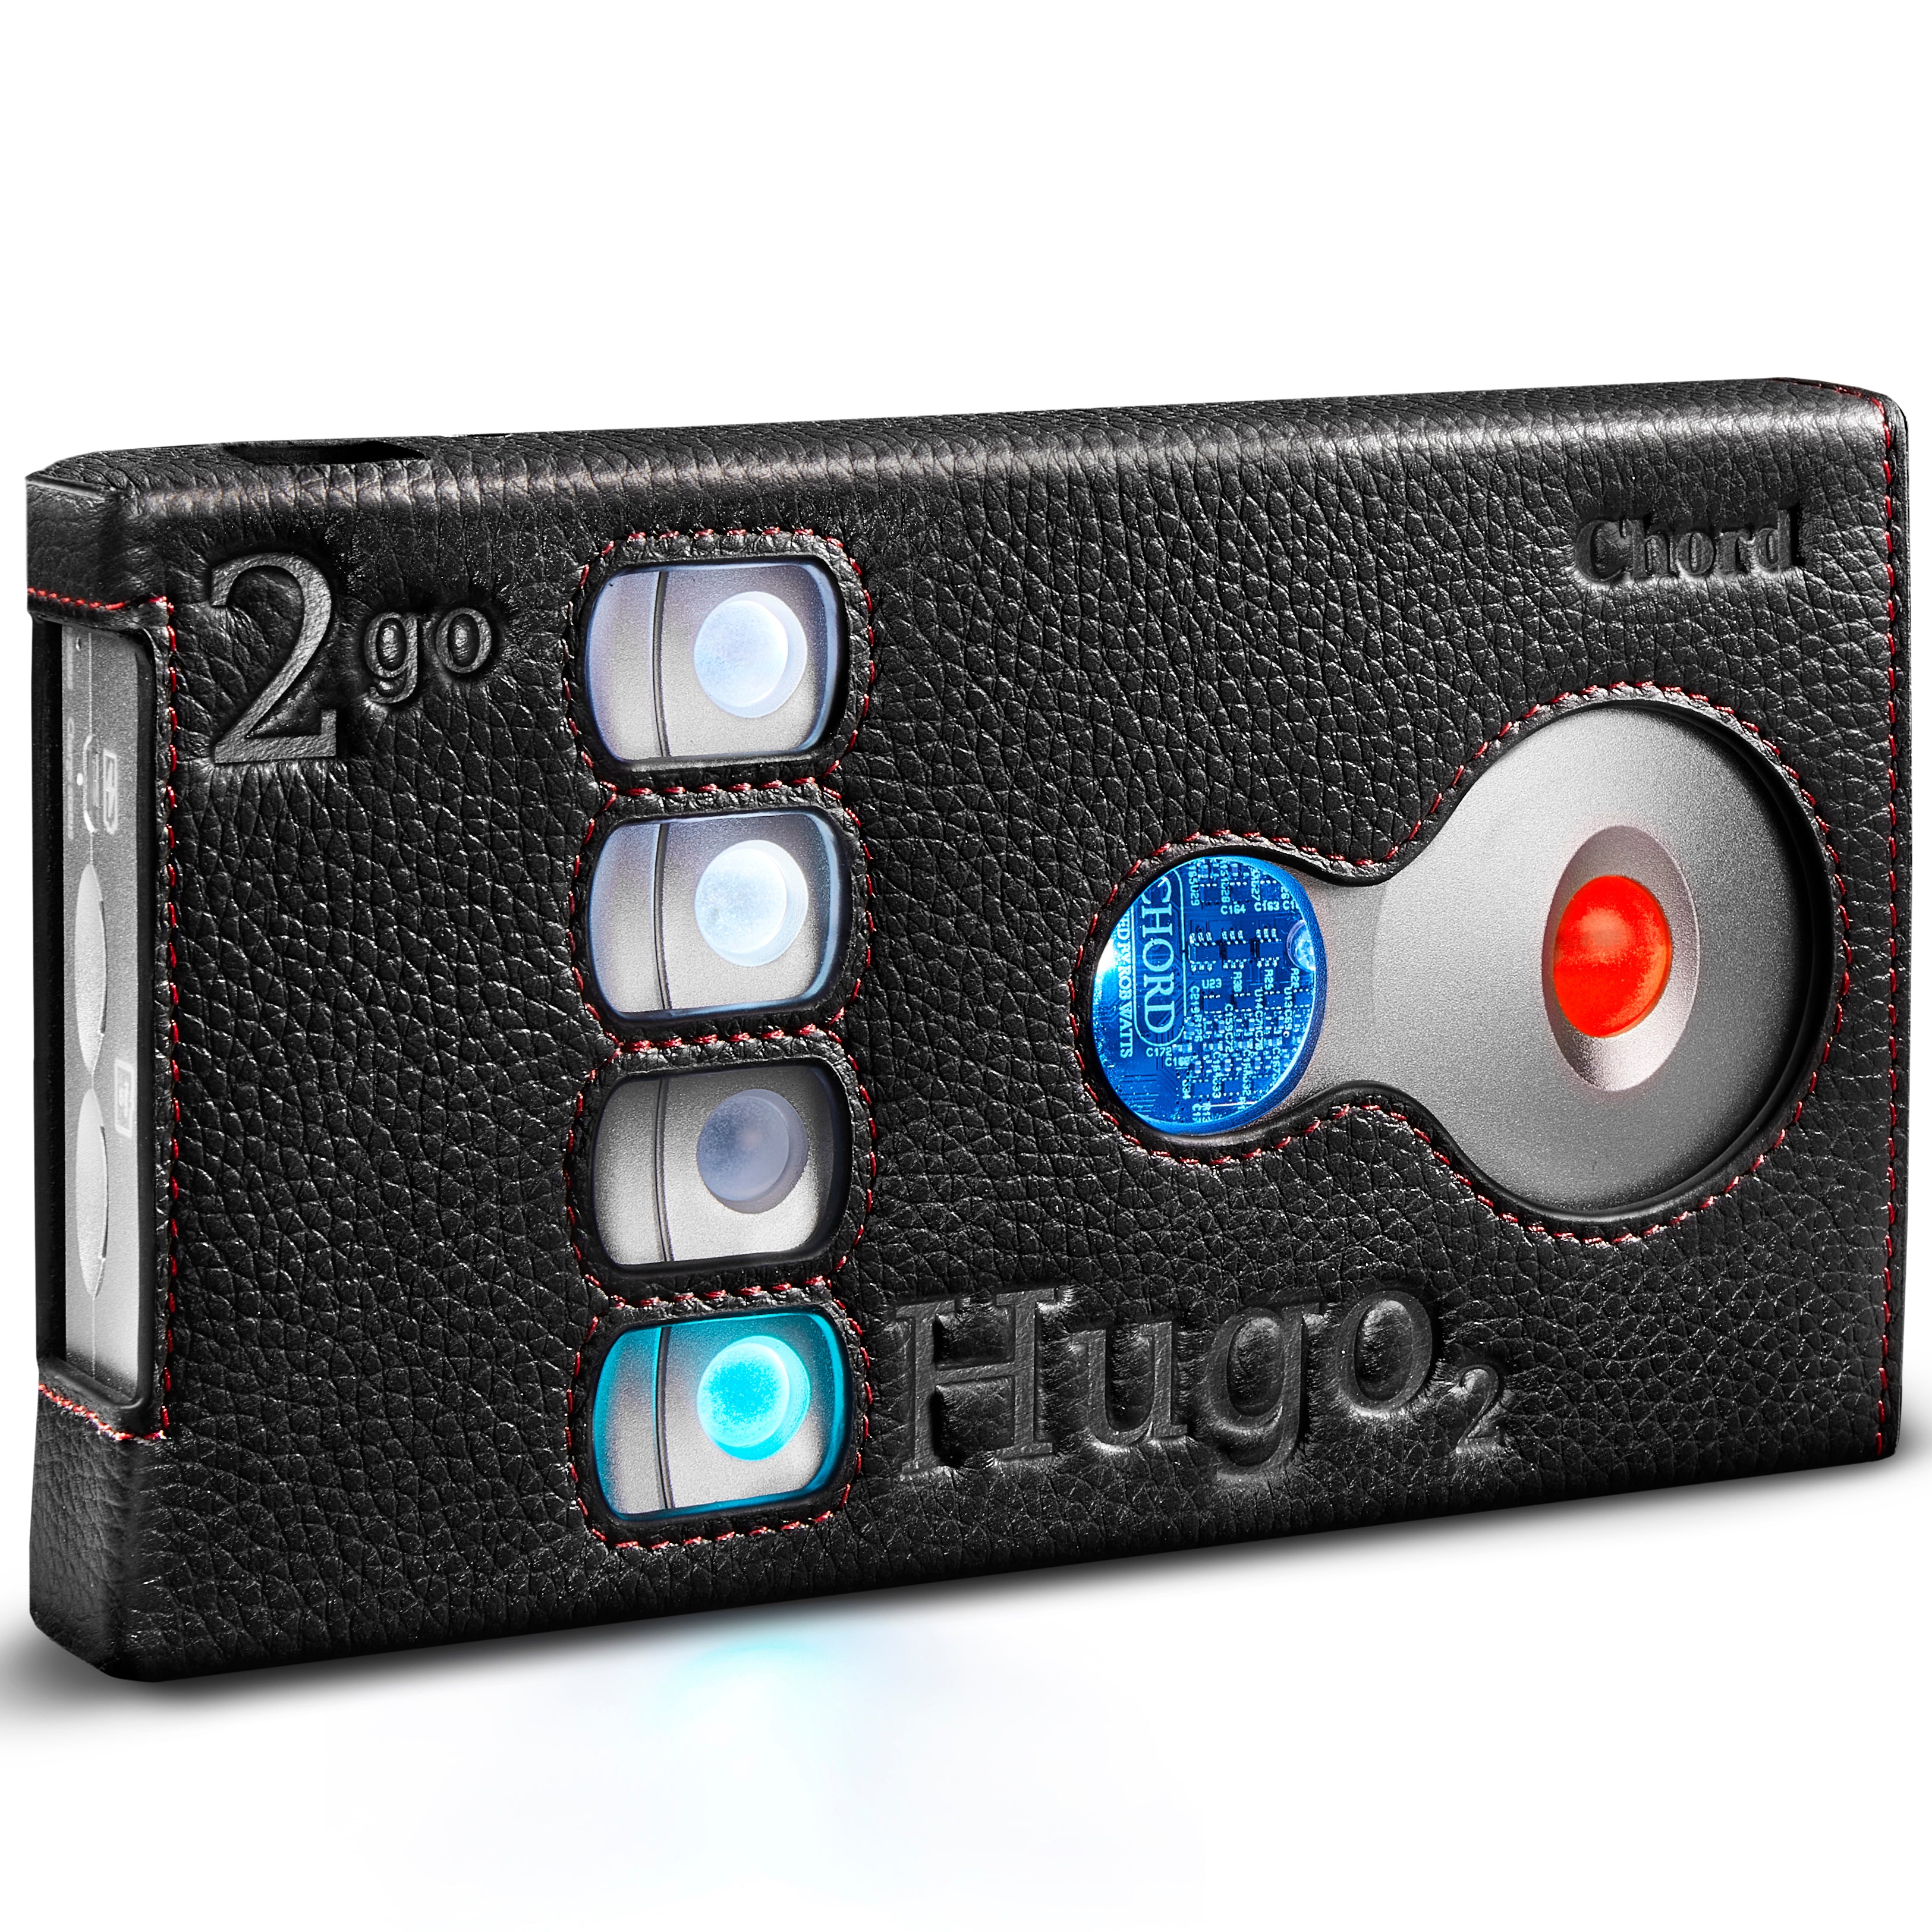 Chord Hugo 2 2go Premium Leather Case